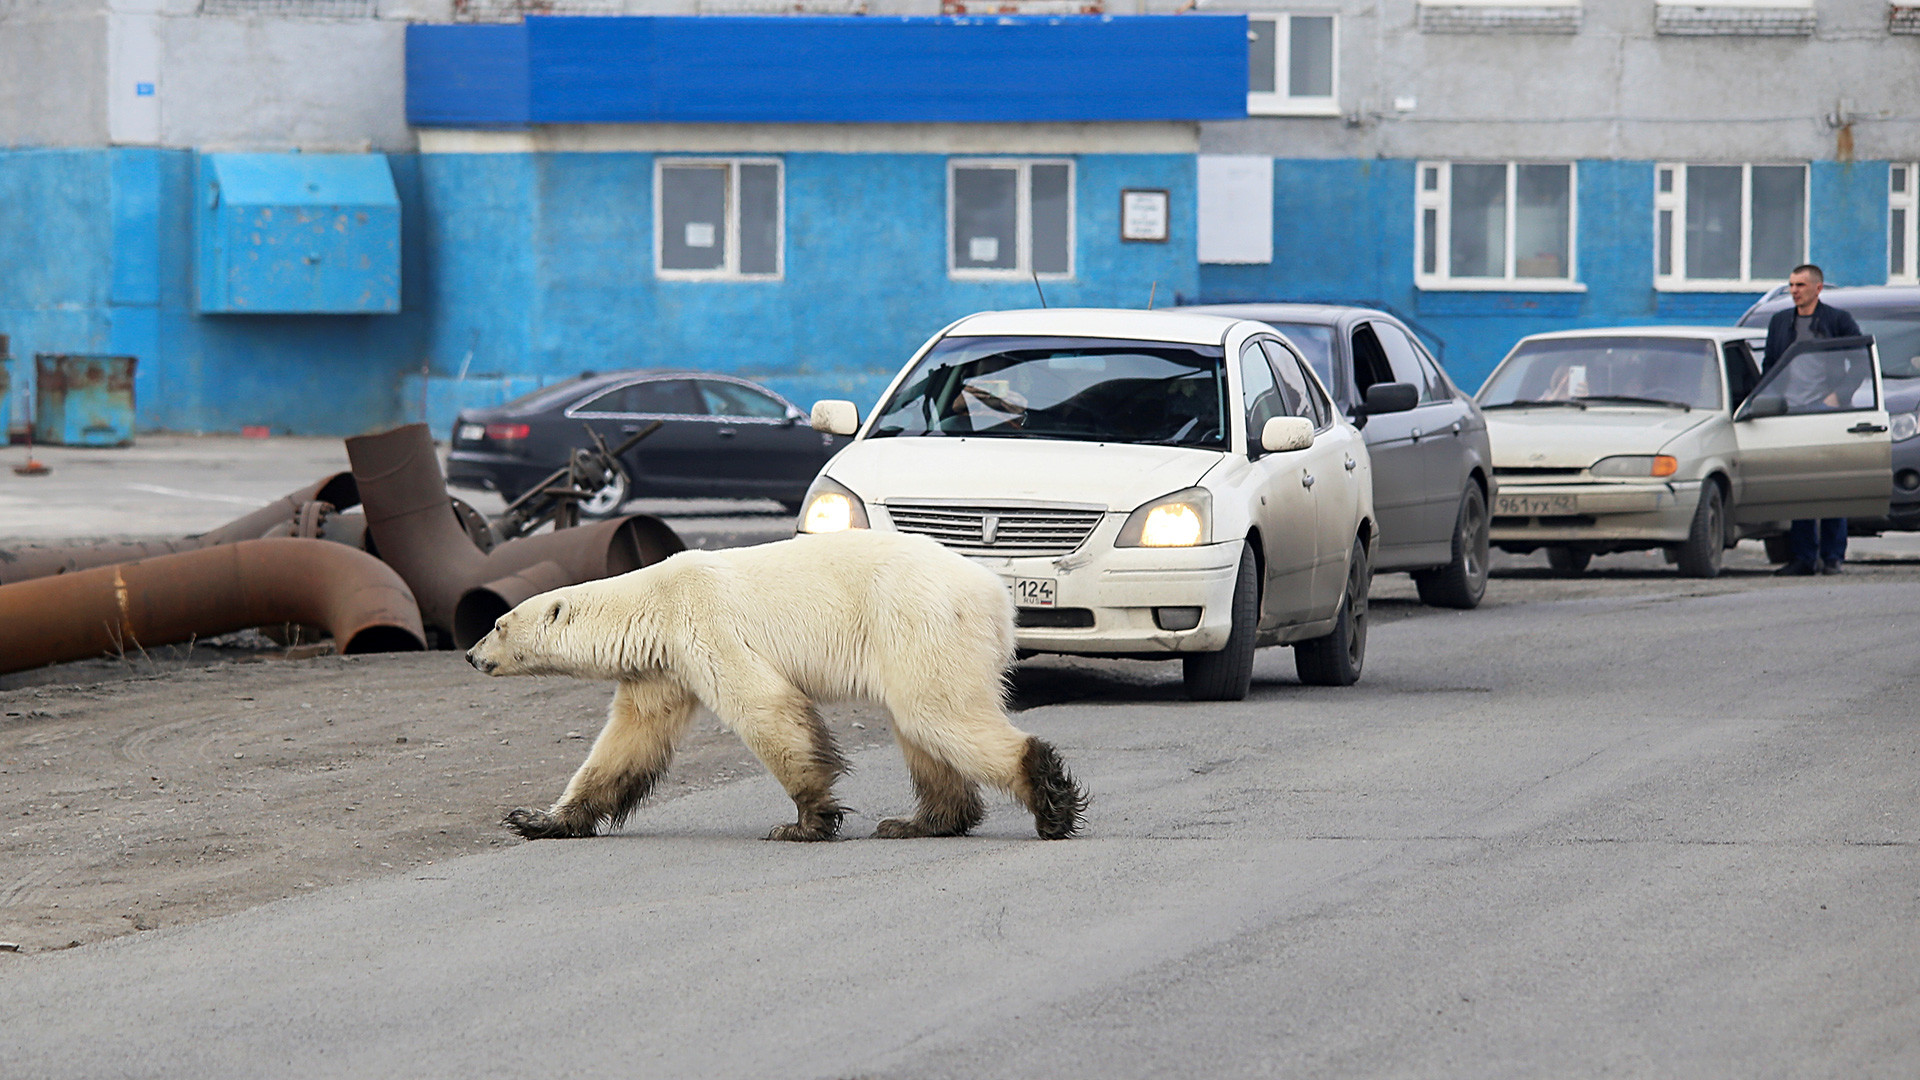 ロシアの都市で見られる野生動物7種 ロシア ビヨンド